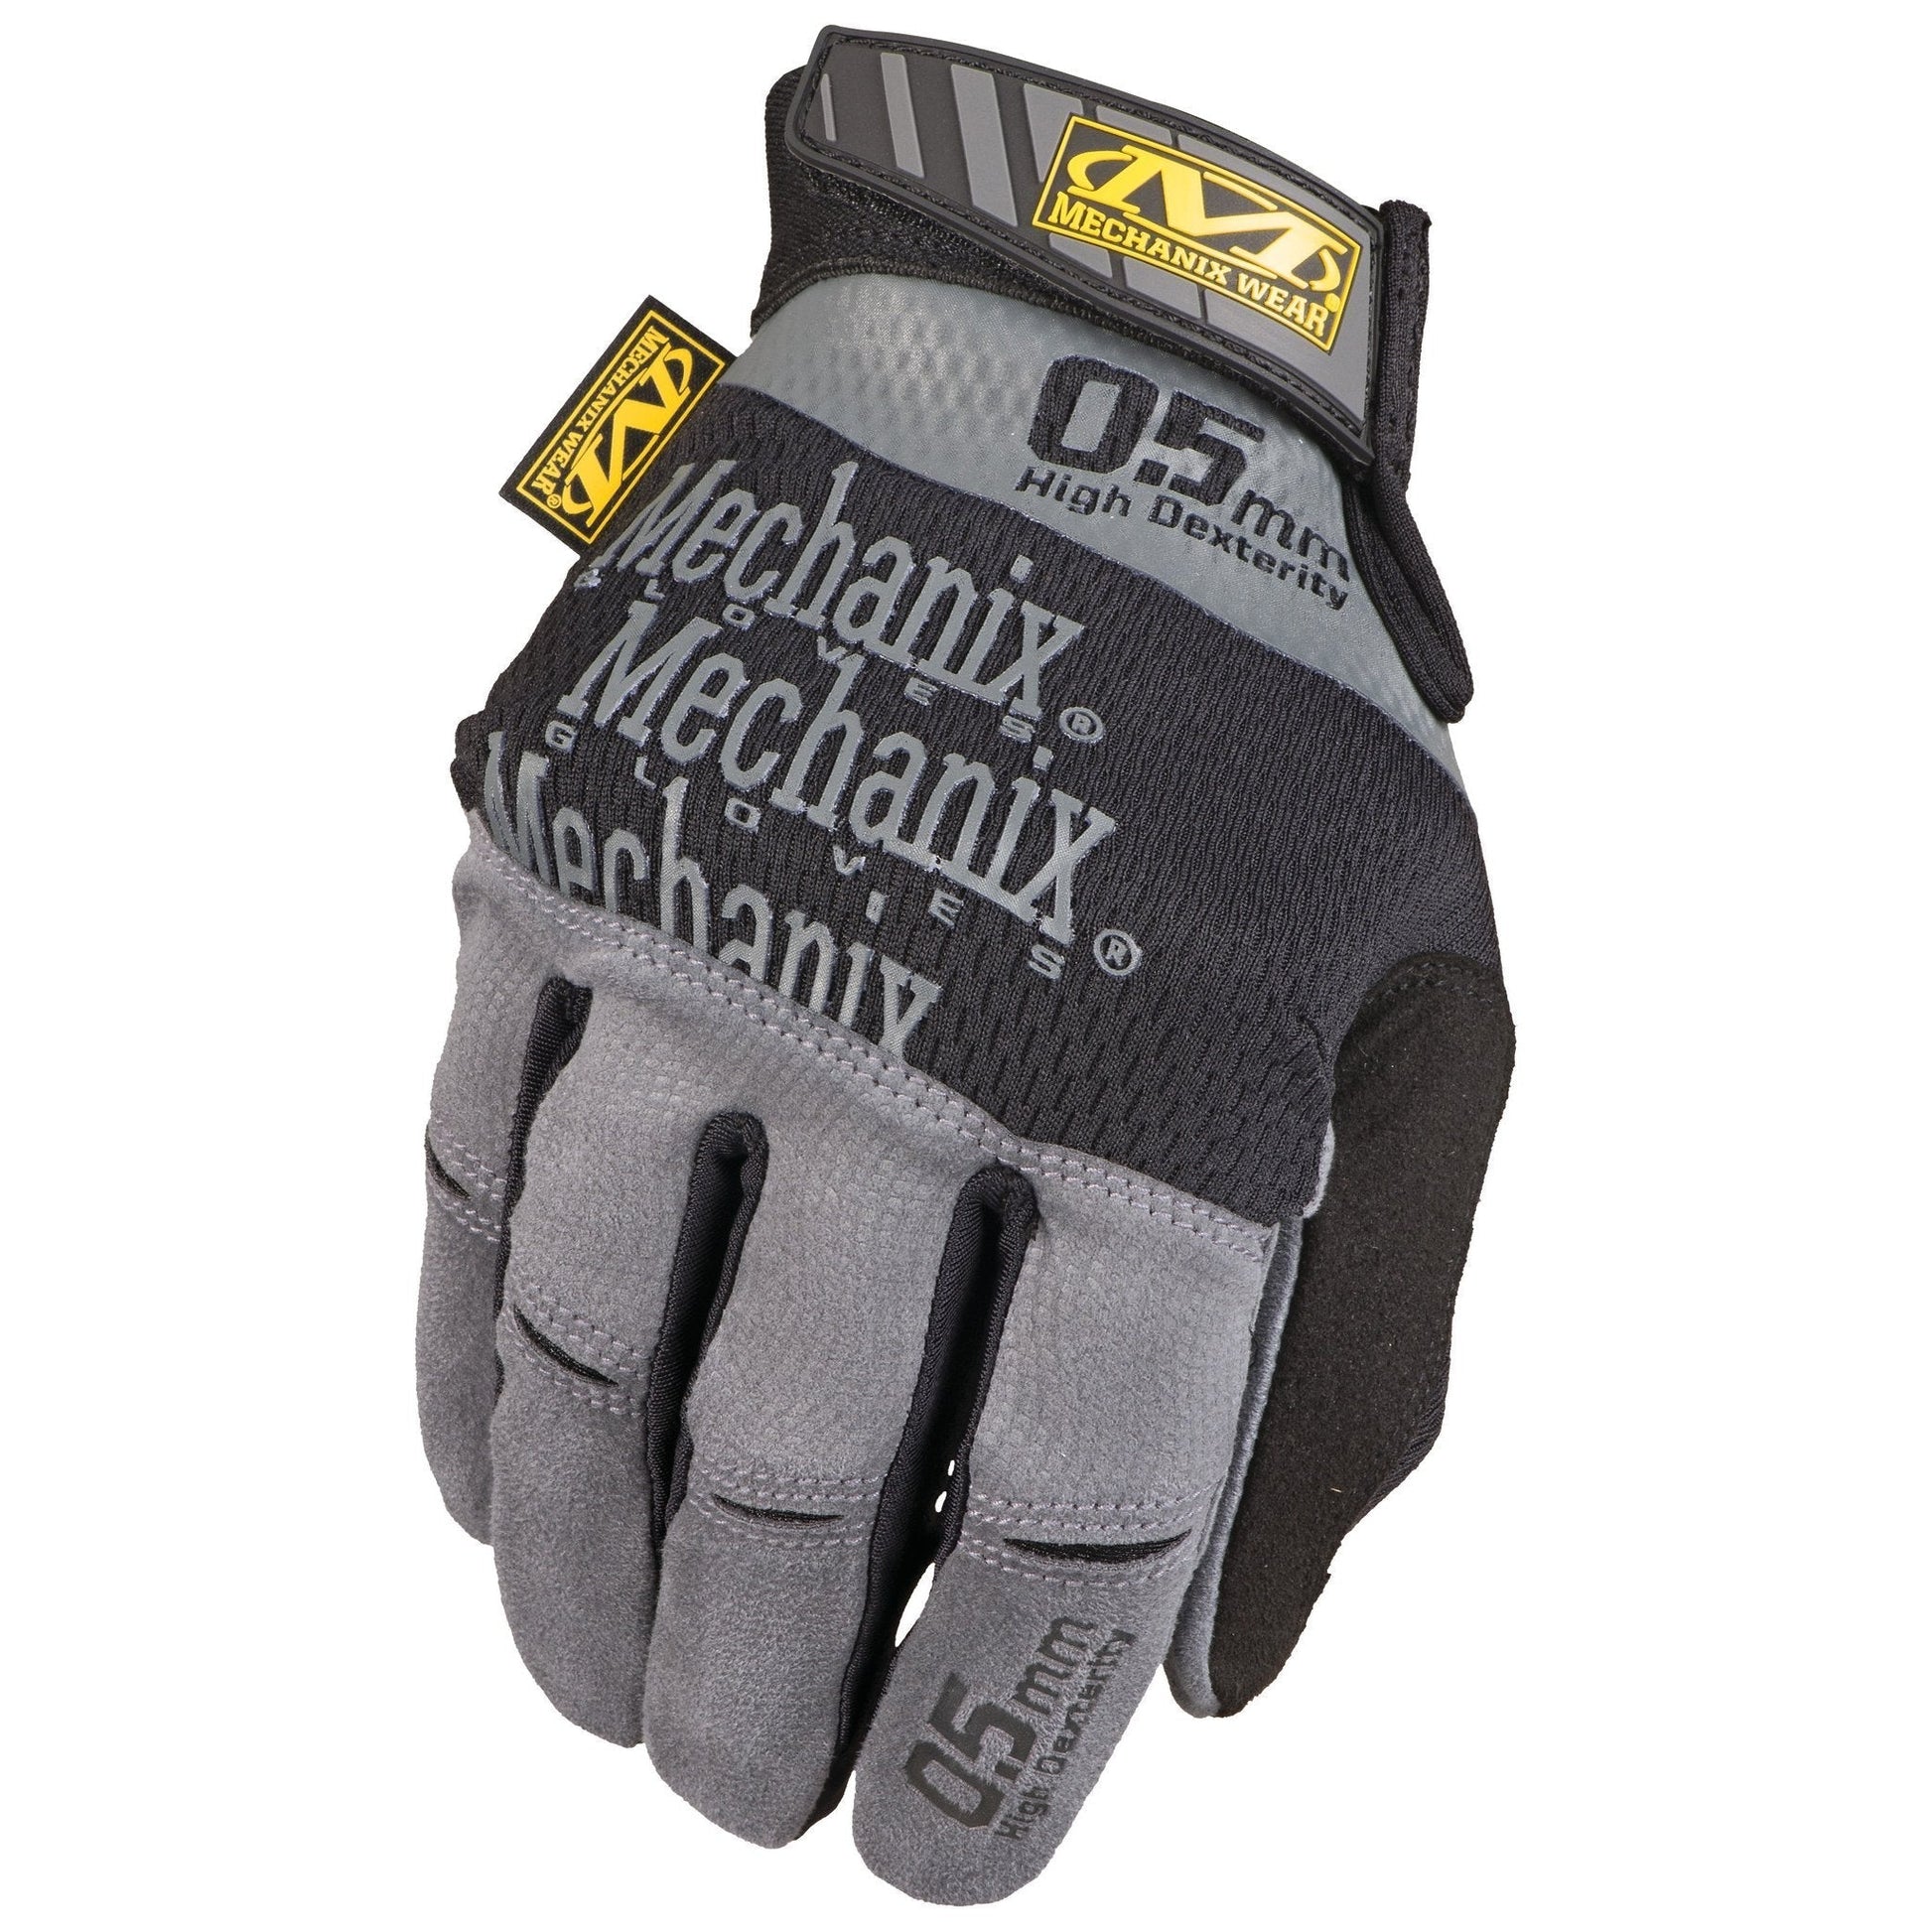 Mechanix Wear Specialty 0.5mm High Dexterity Glove Gray